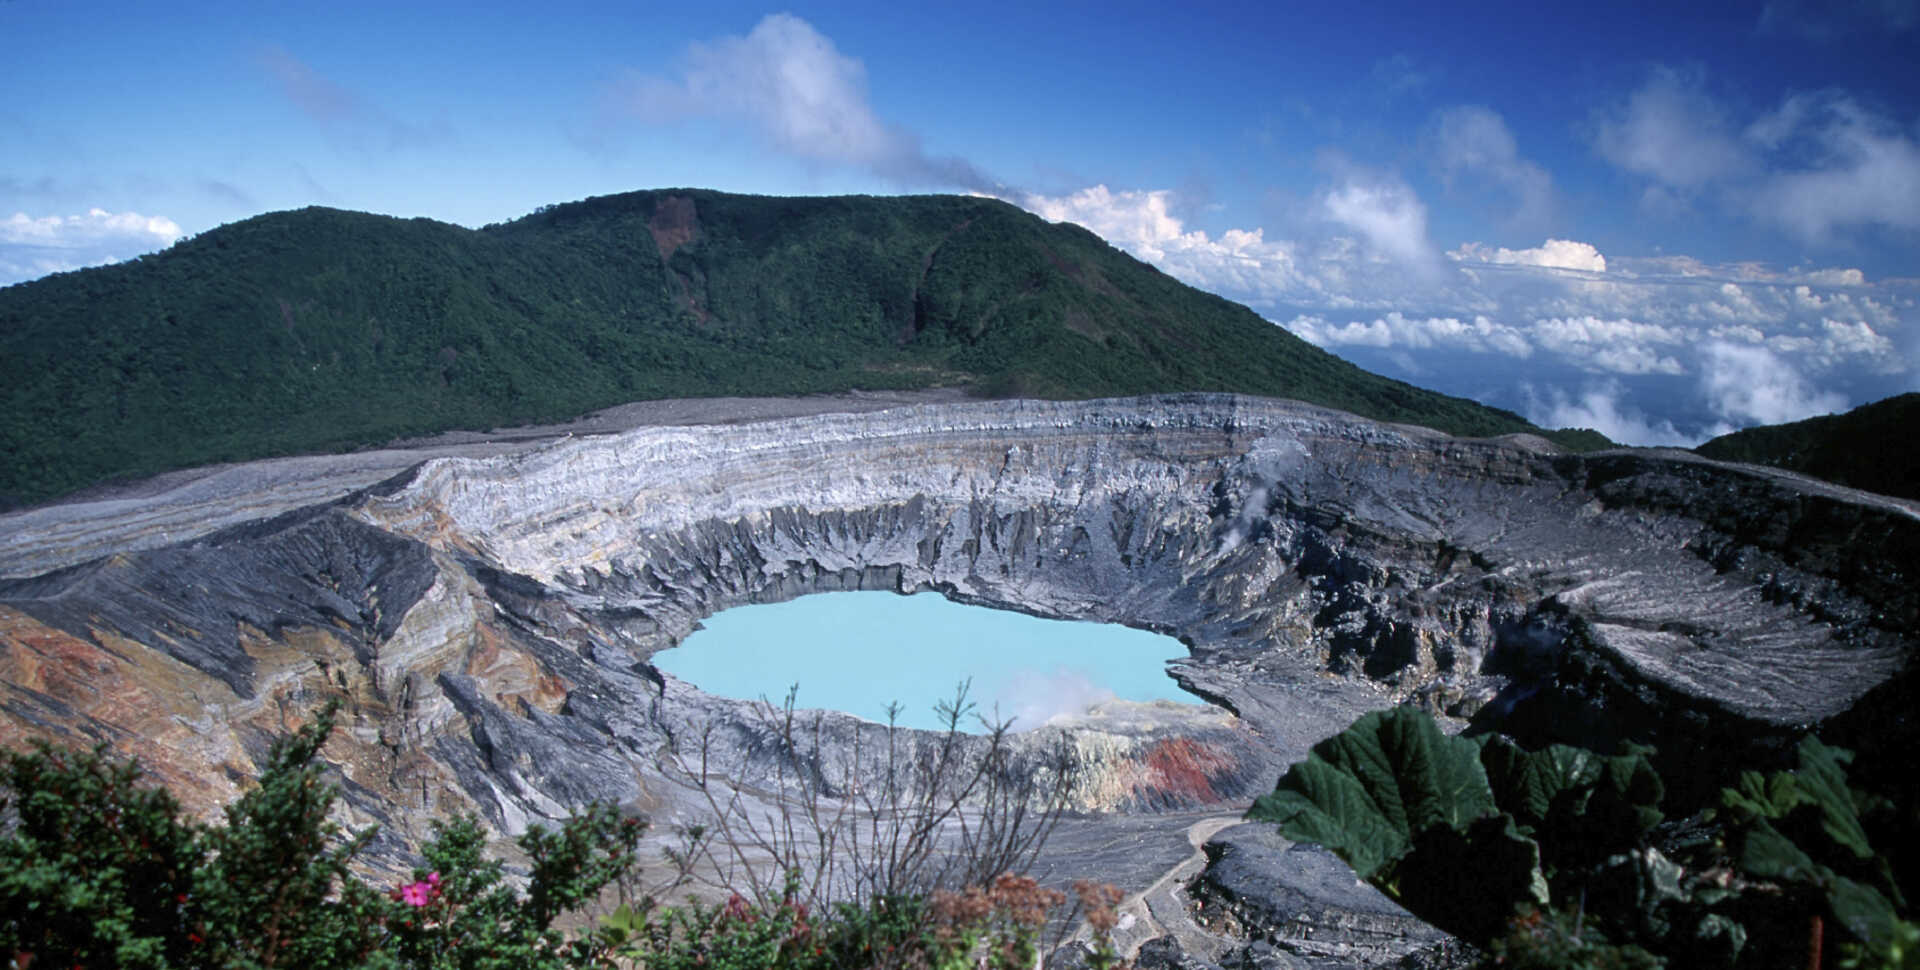 View of Poas volcano in Costa Rica